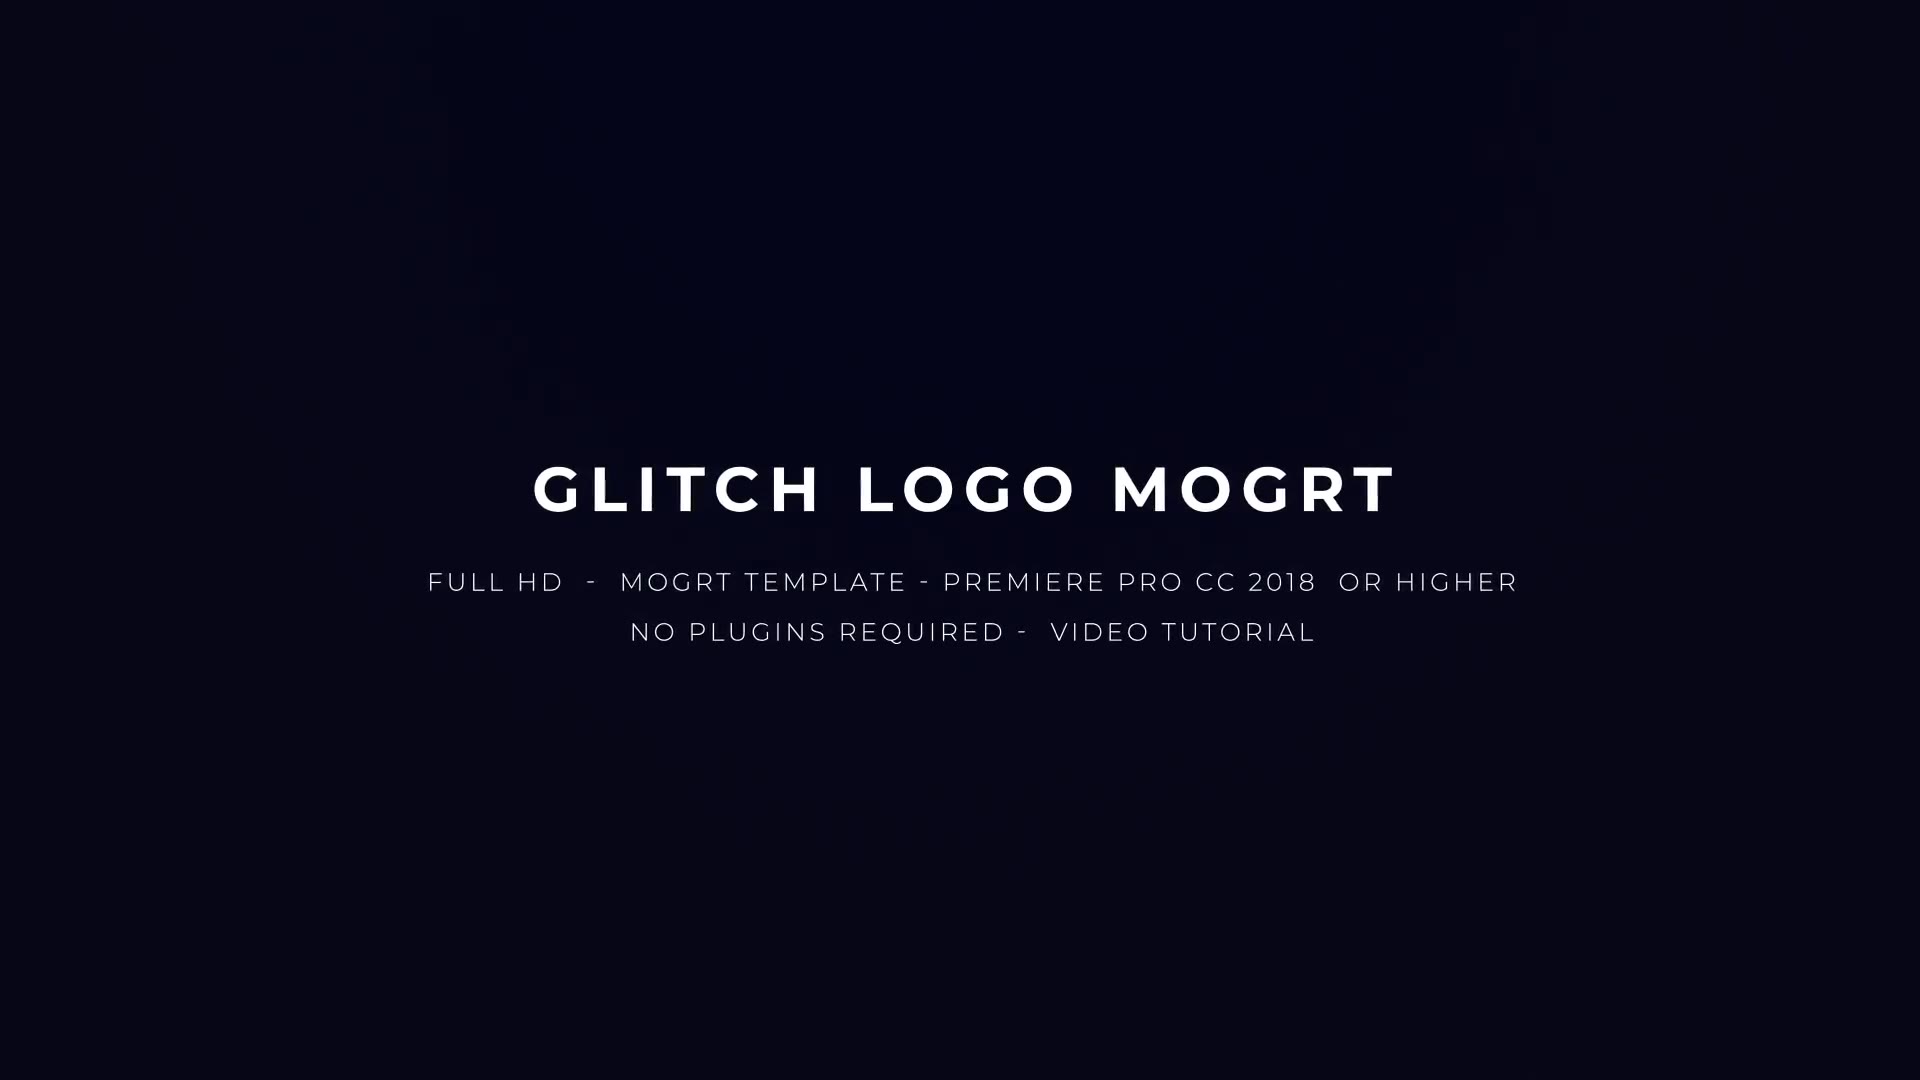 Glitch Logo Mogrt Videohive 22871341 Premiere Pro Image 3